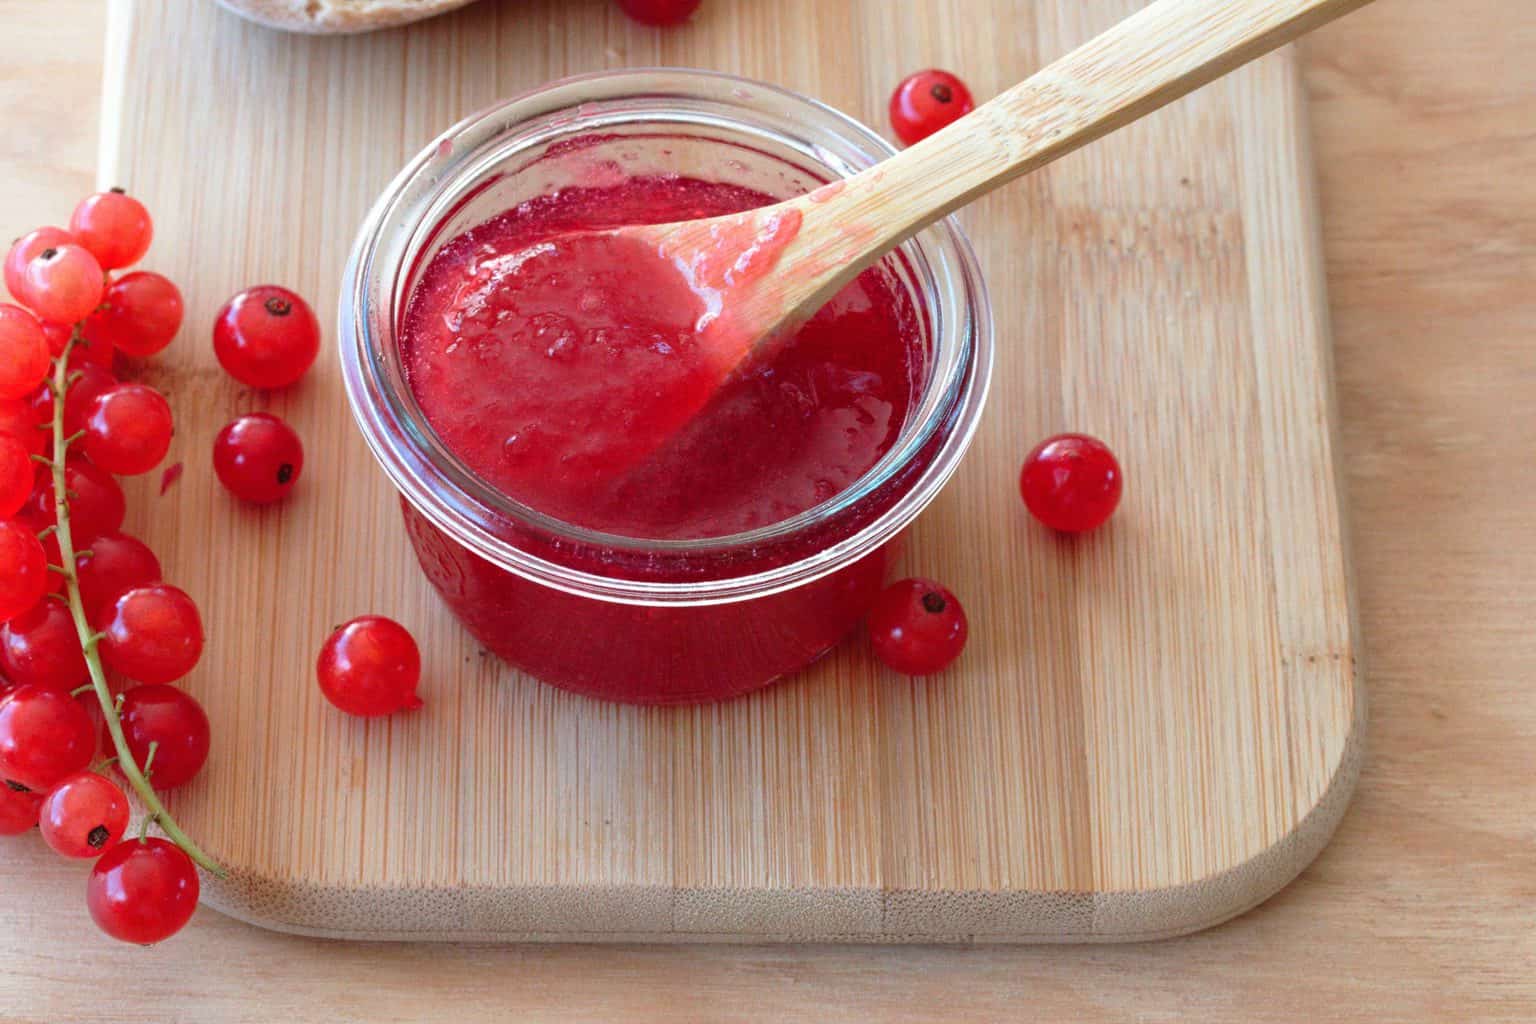 How to make Redcurrant Jam